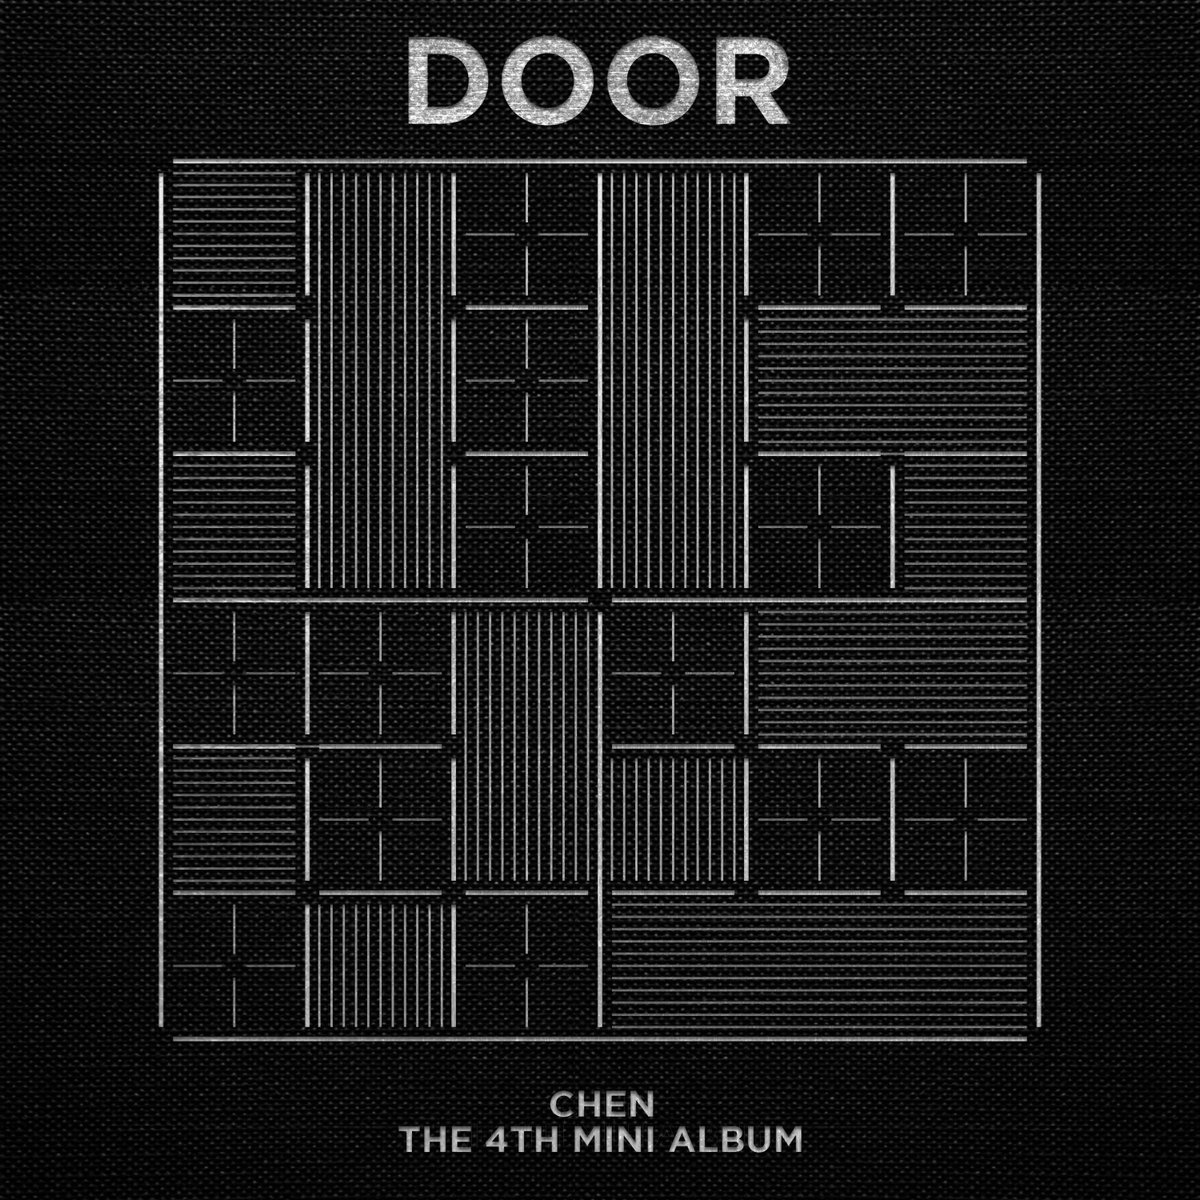 📢 [안내] 첸(CHEN) The 4th Mini Album 'DOOR' 발매 안내 🔗weverse.io/chen/notice/19… #첸 #CHEN #DOOR #빈집 #Empty